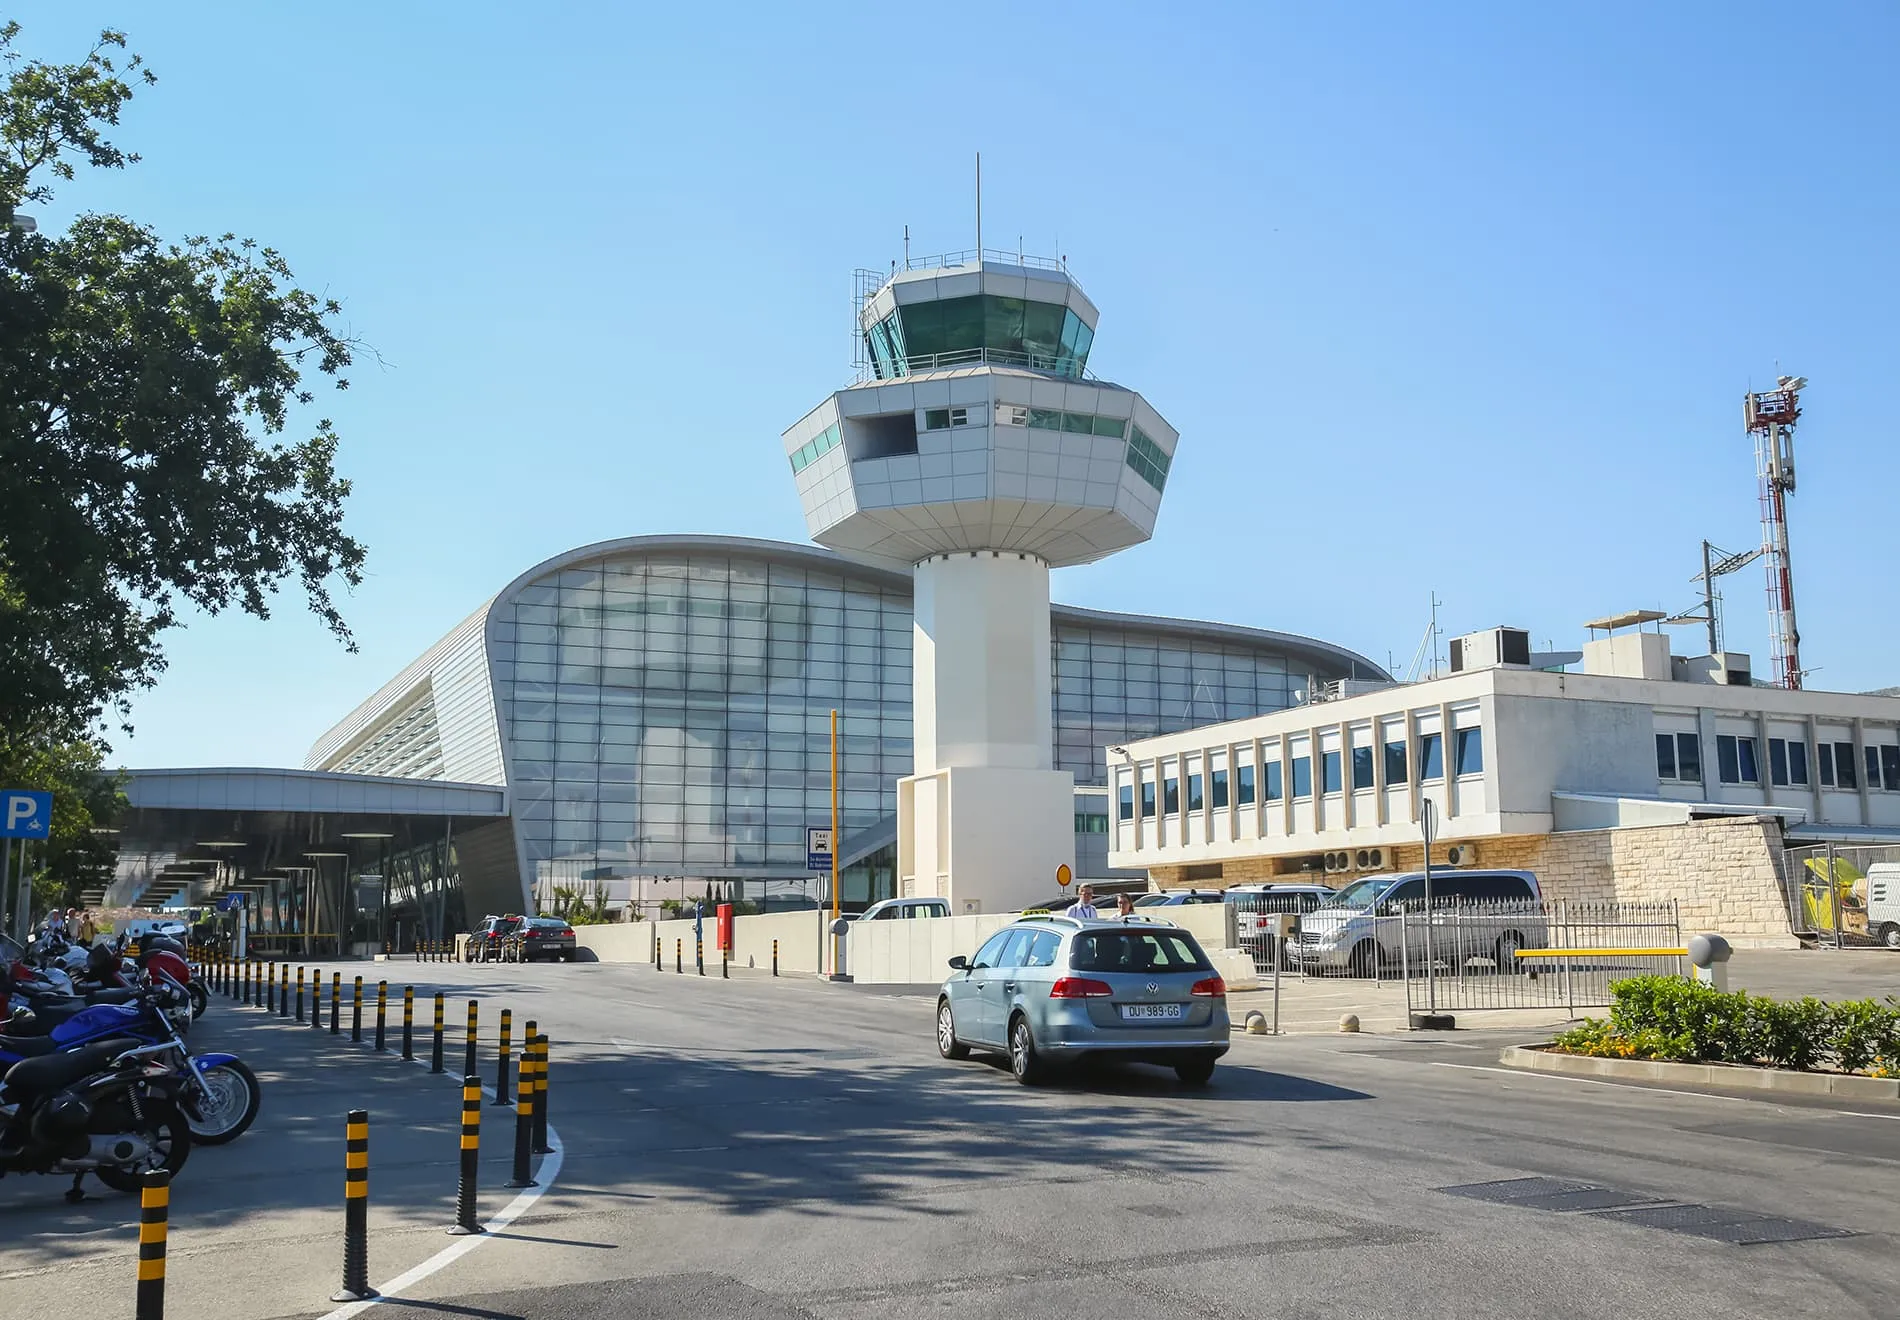 Dubrovnik Airport